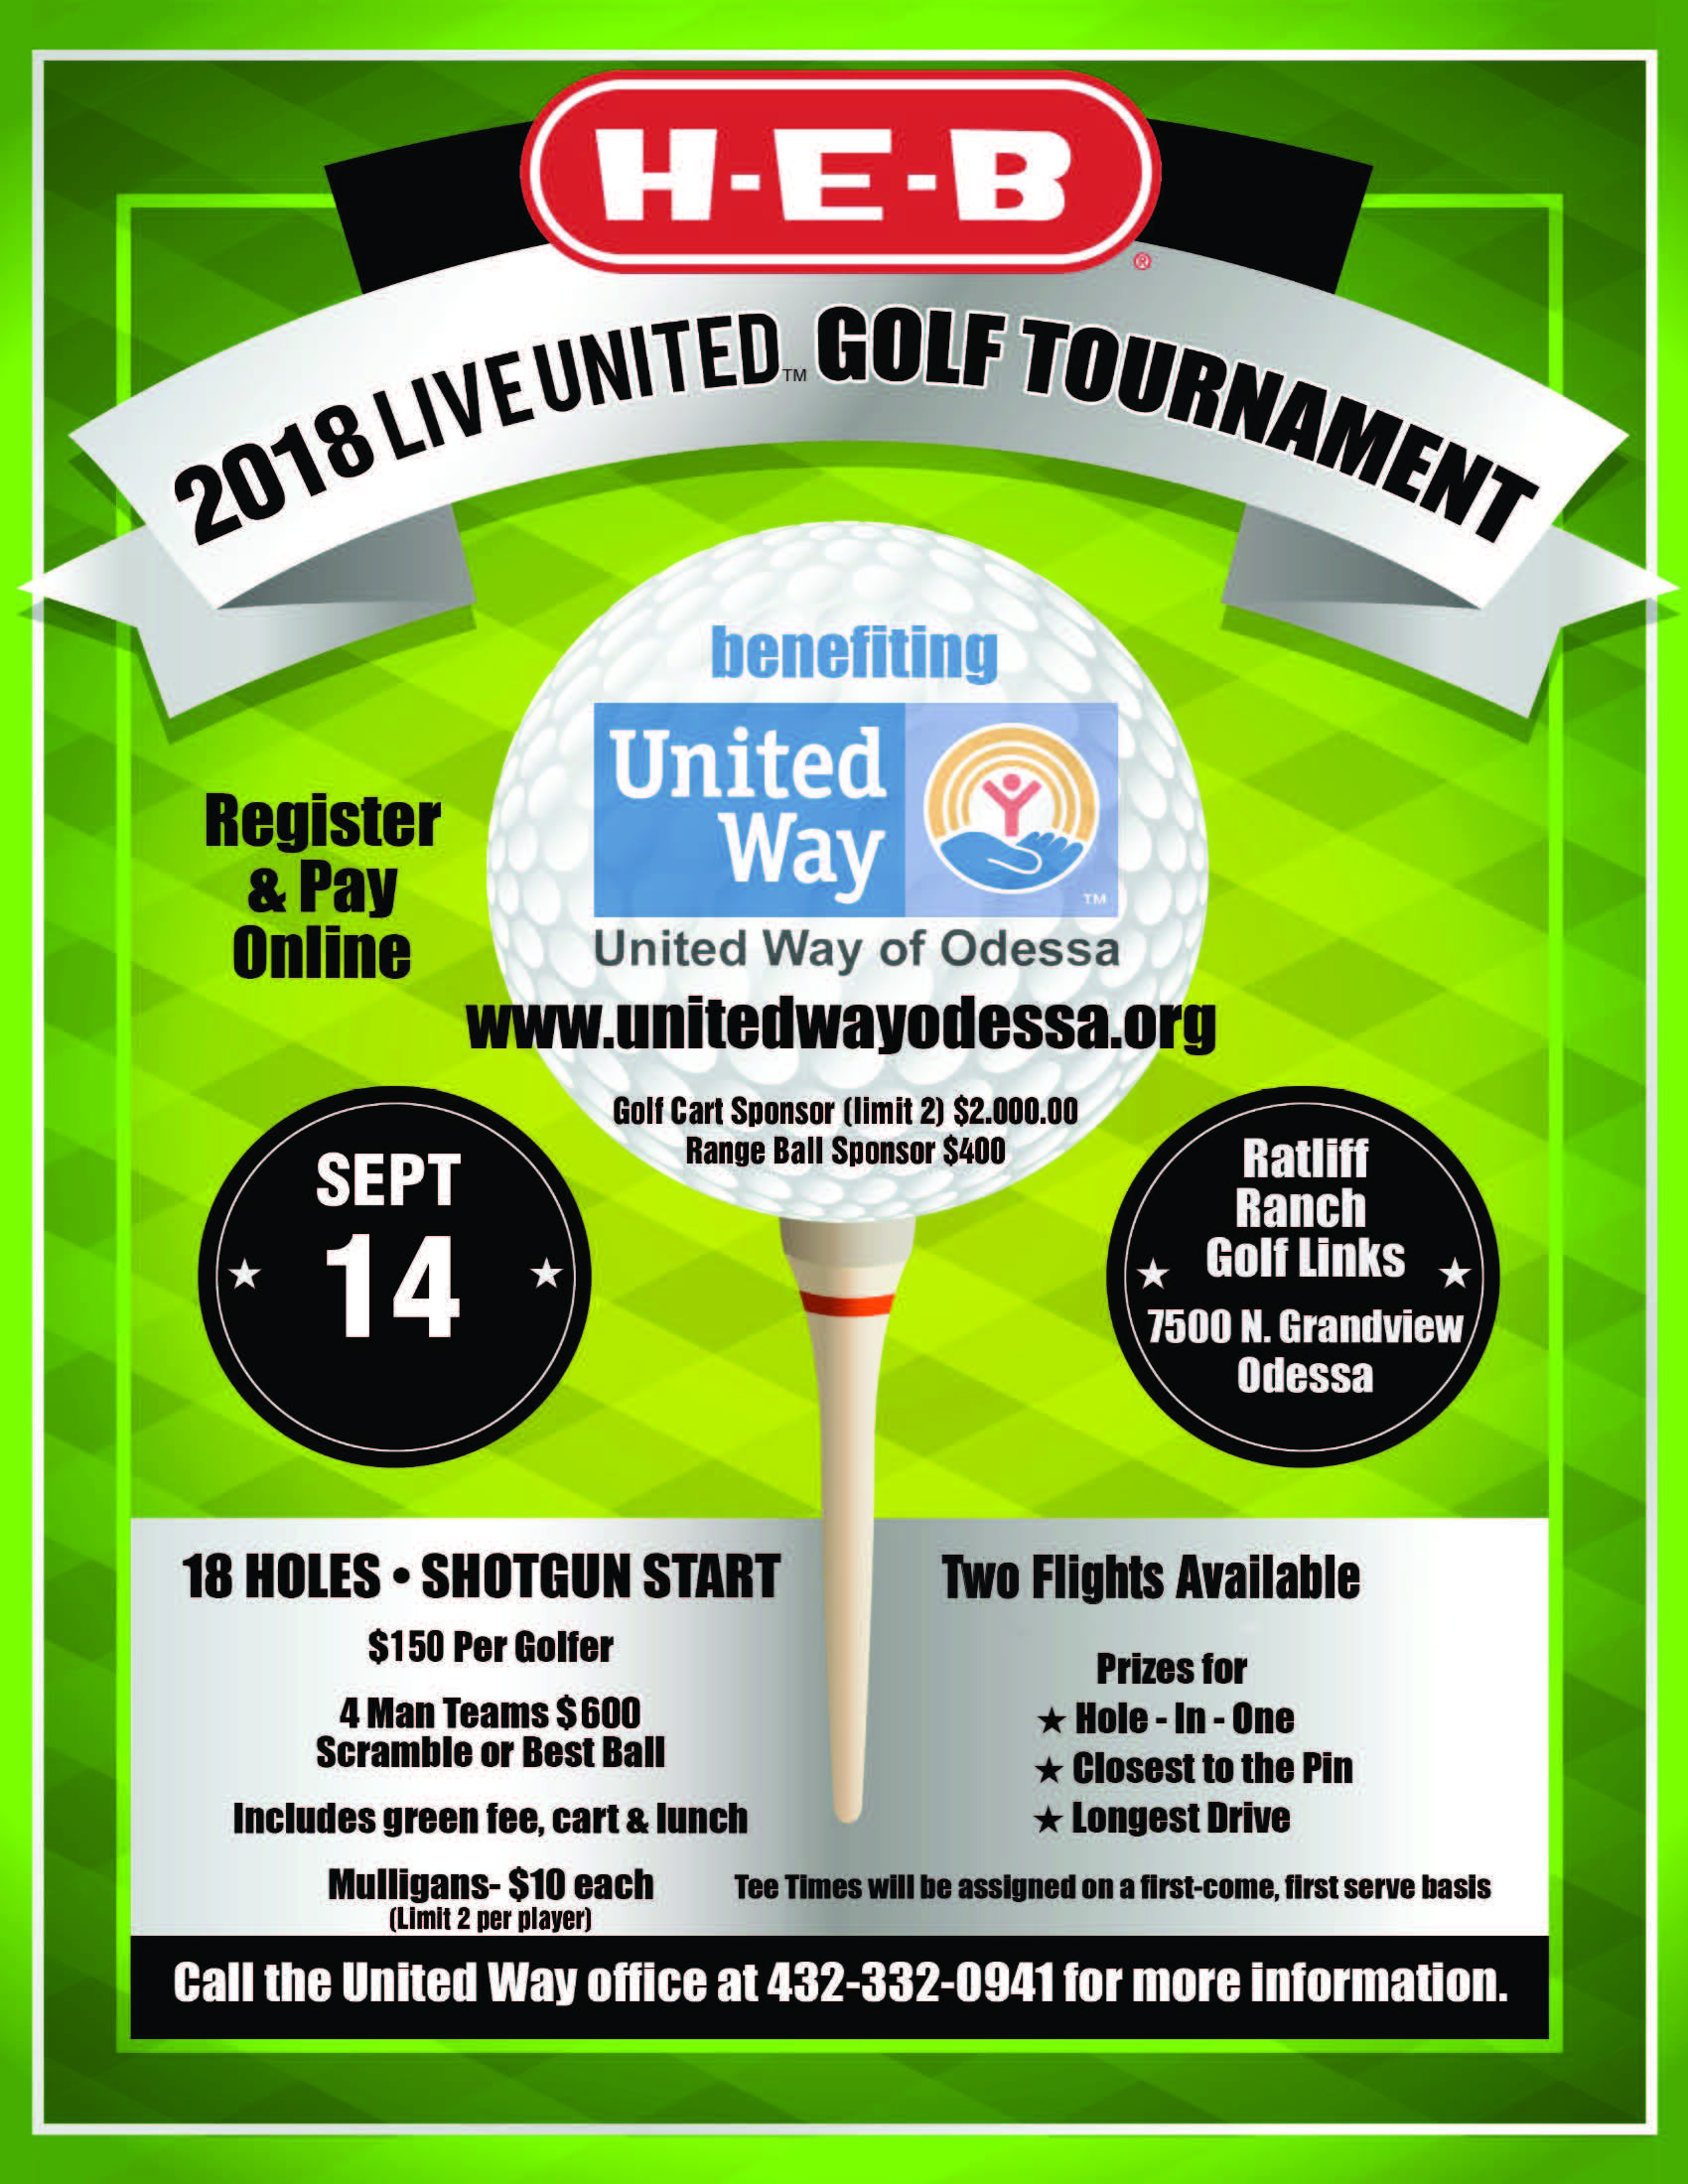 2018 Live United Golf Tournament